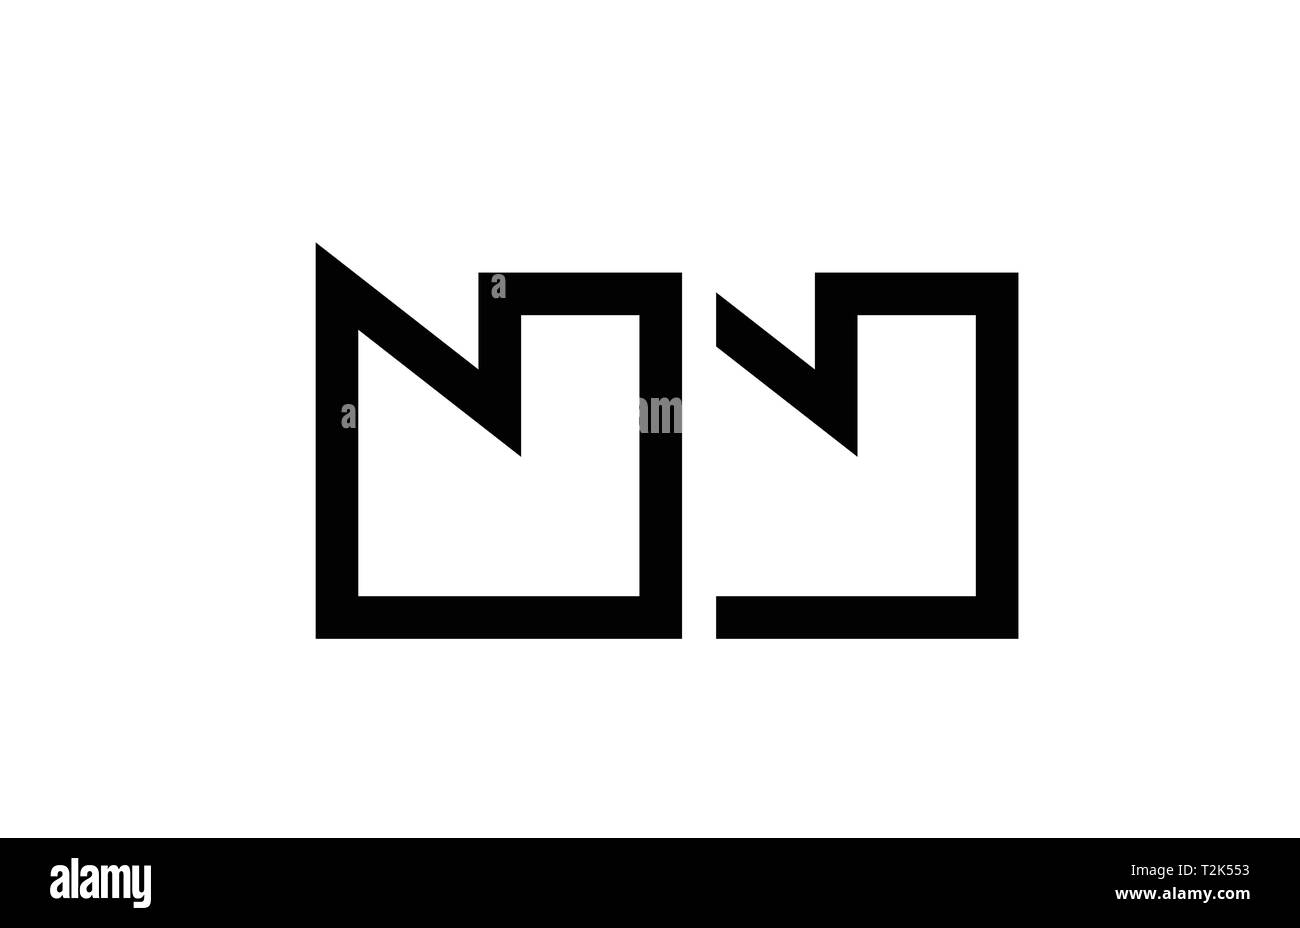 Noir et blanc logo lettre alphabet combinaison nn n n design adapté pour une société ou entreprise Illustration de Vecteur